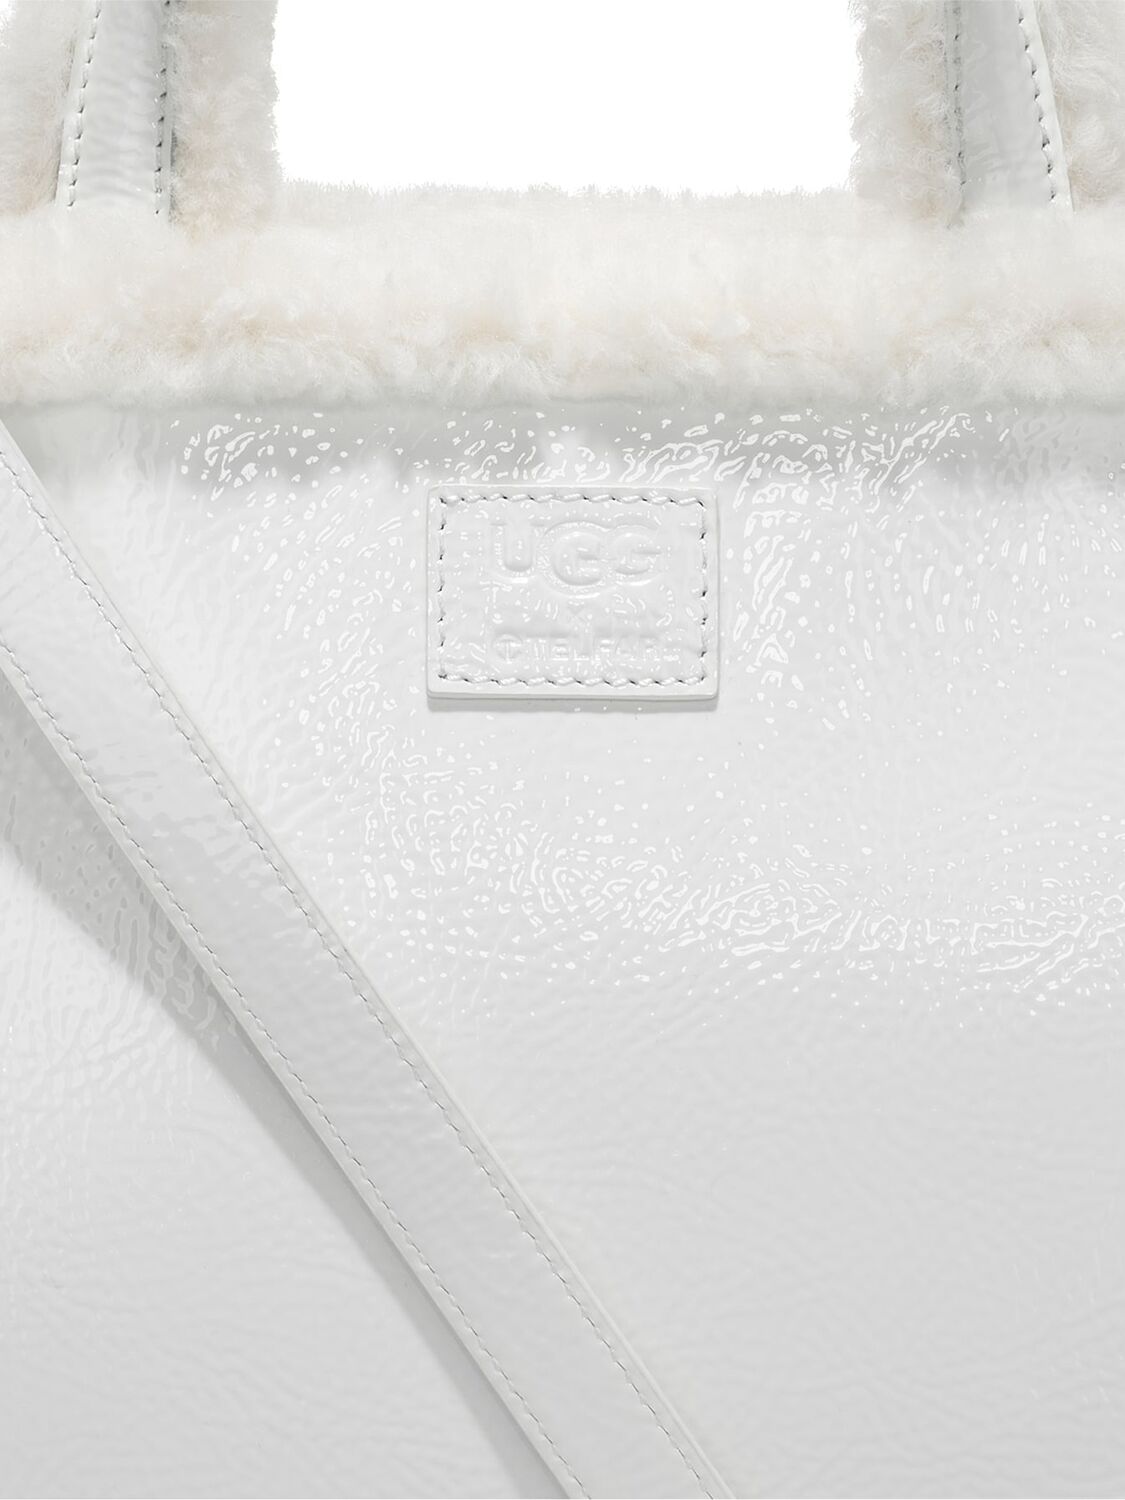 Shop Ugg X Telfar Medium Telfar Crinkle Patent Shopper Bag In White